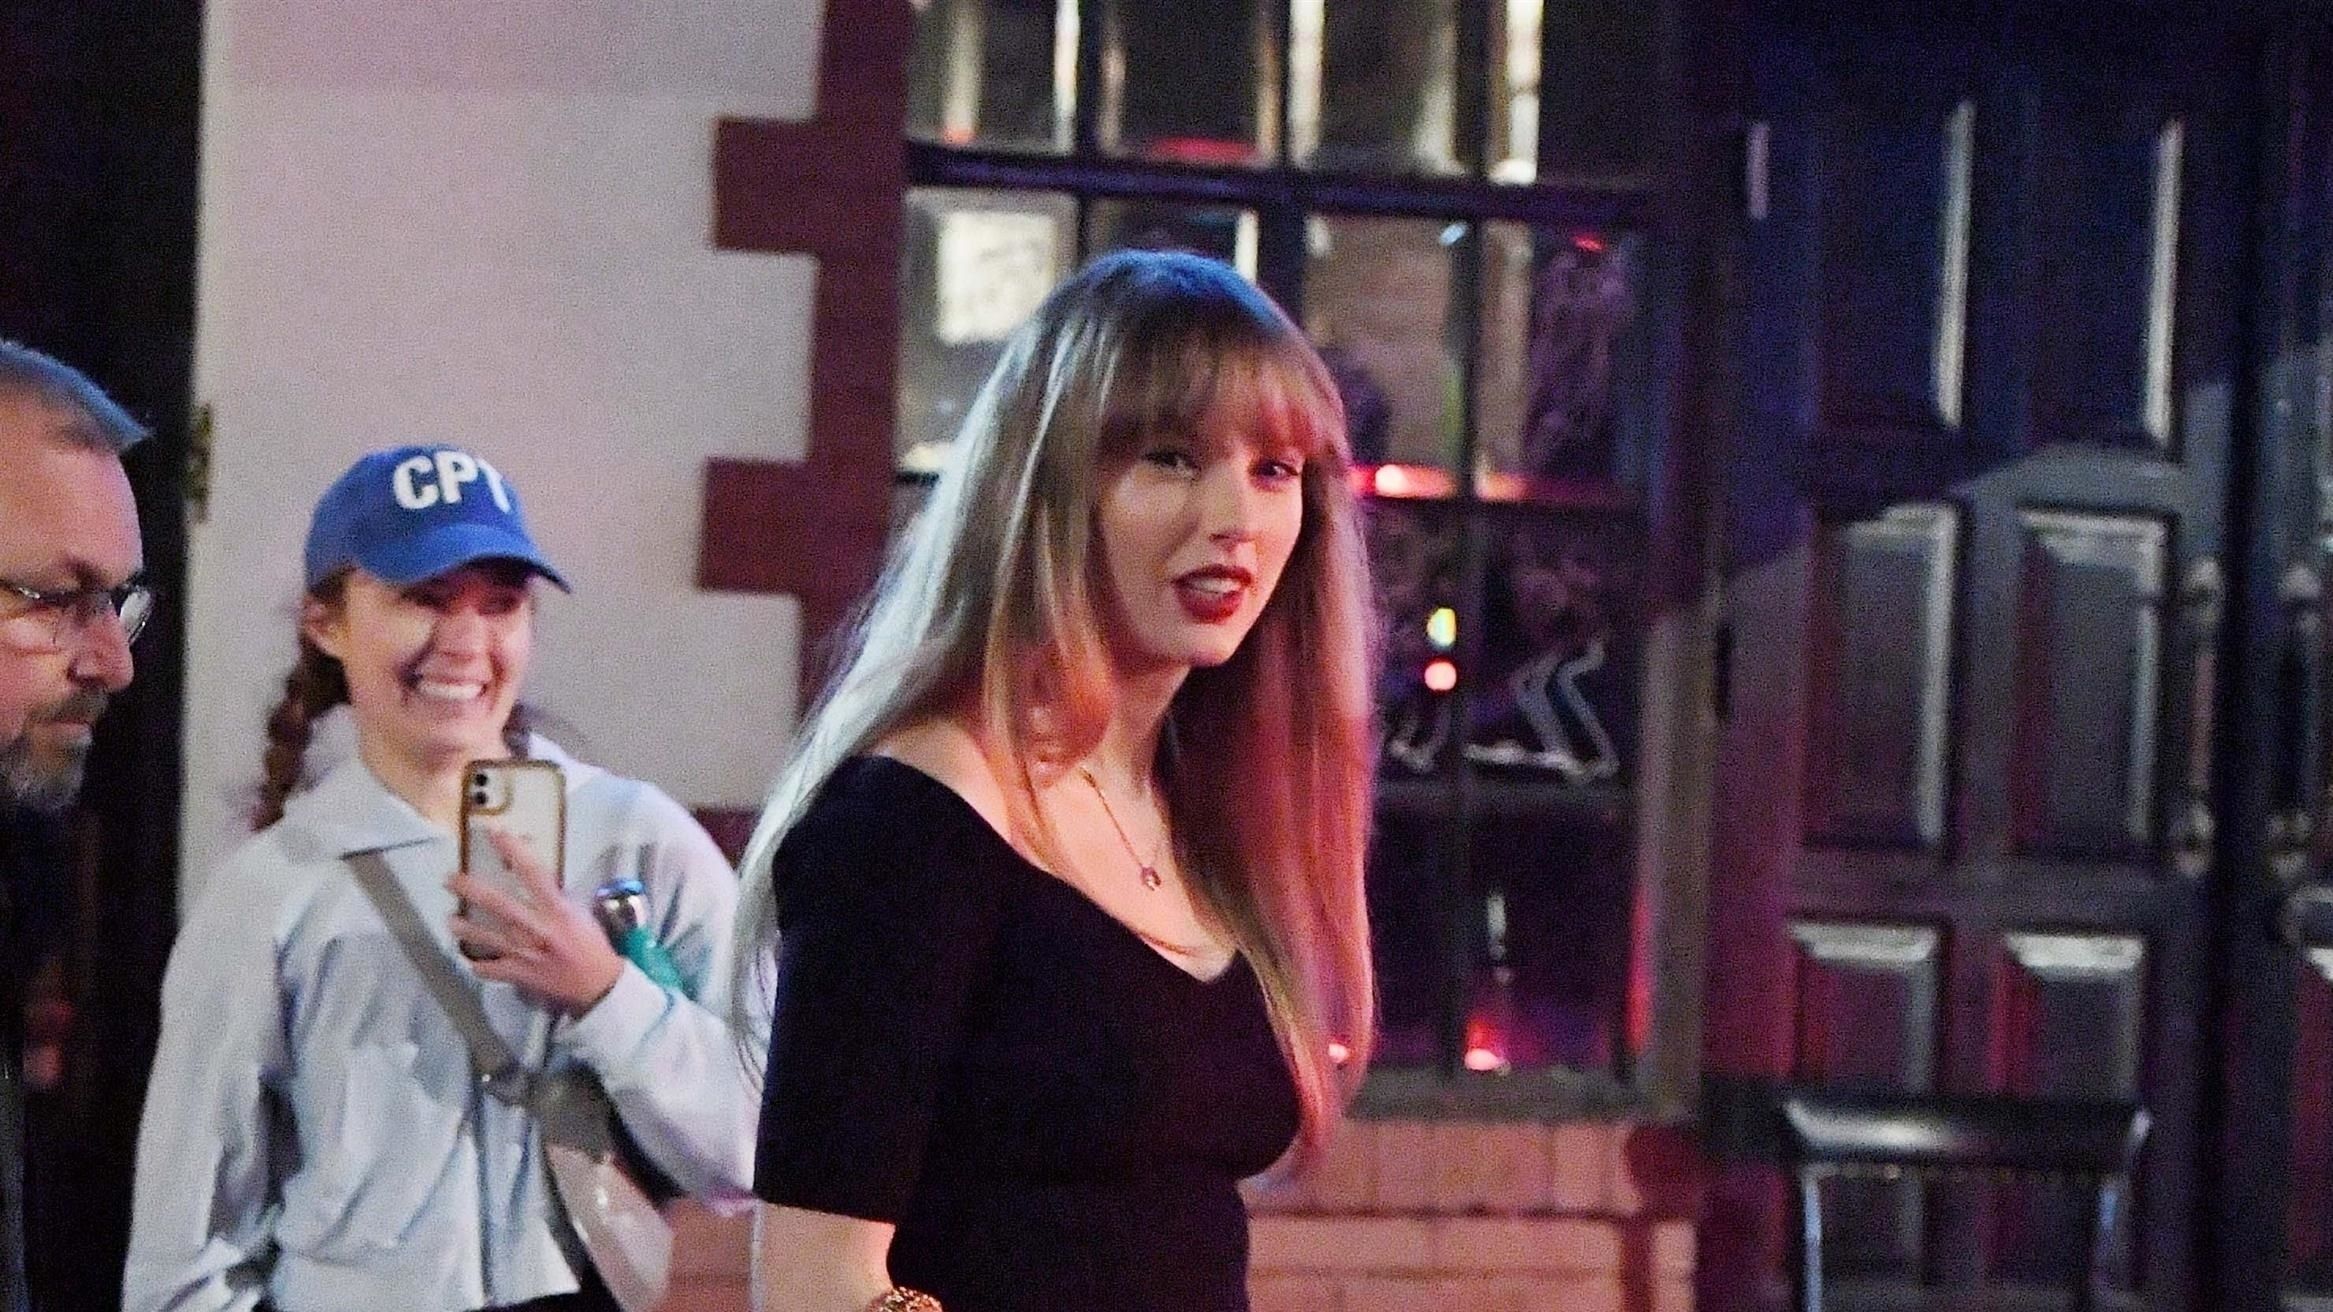 Taylor Swift seen out in NYC after Joe Alwyn breakup news